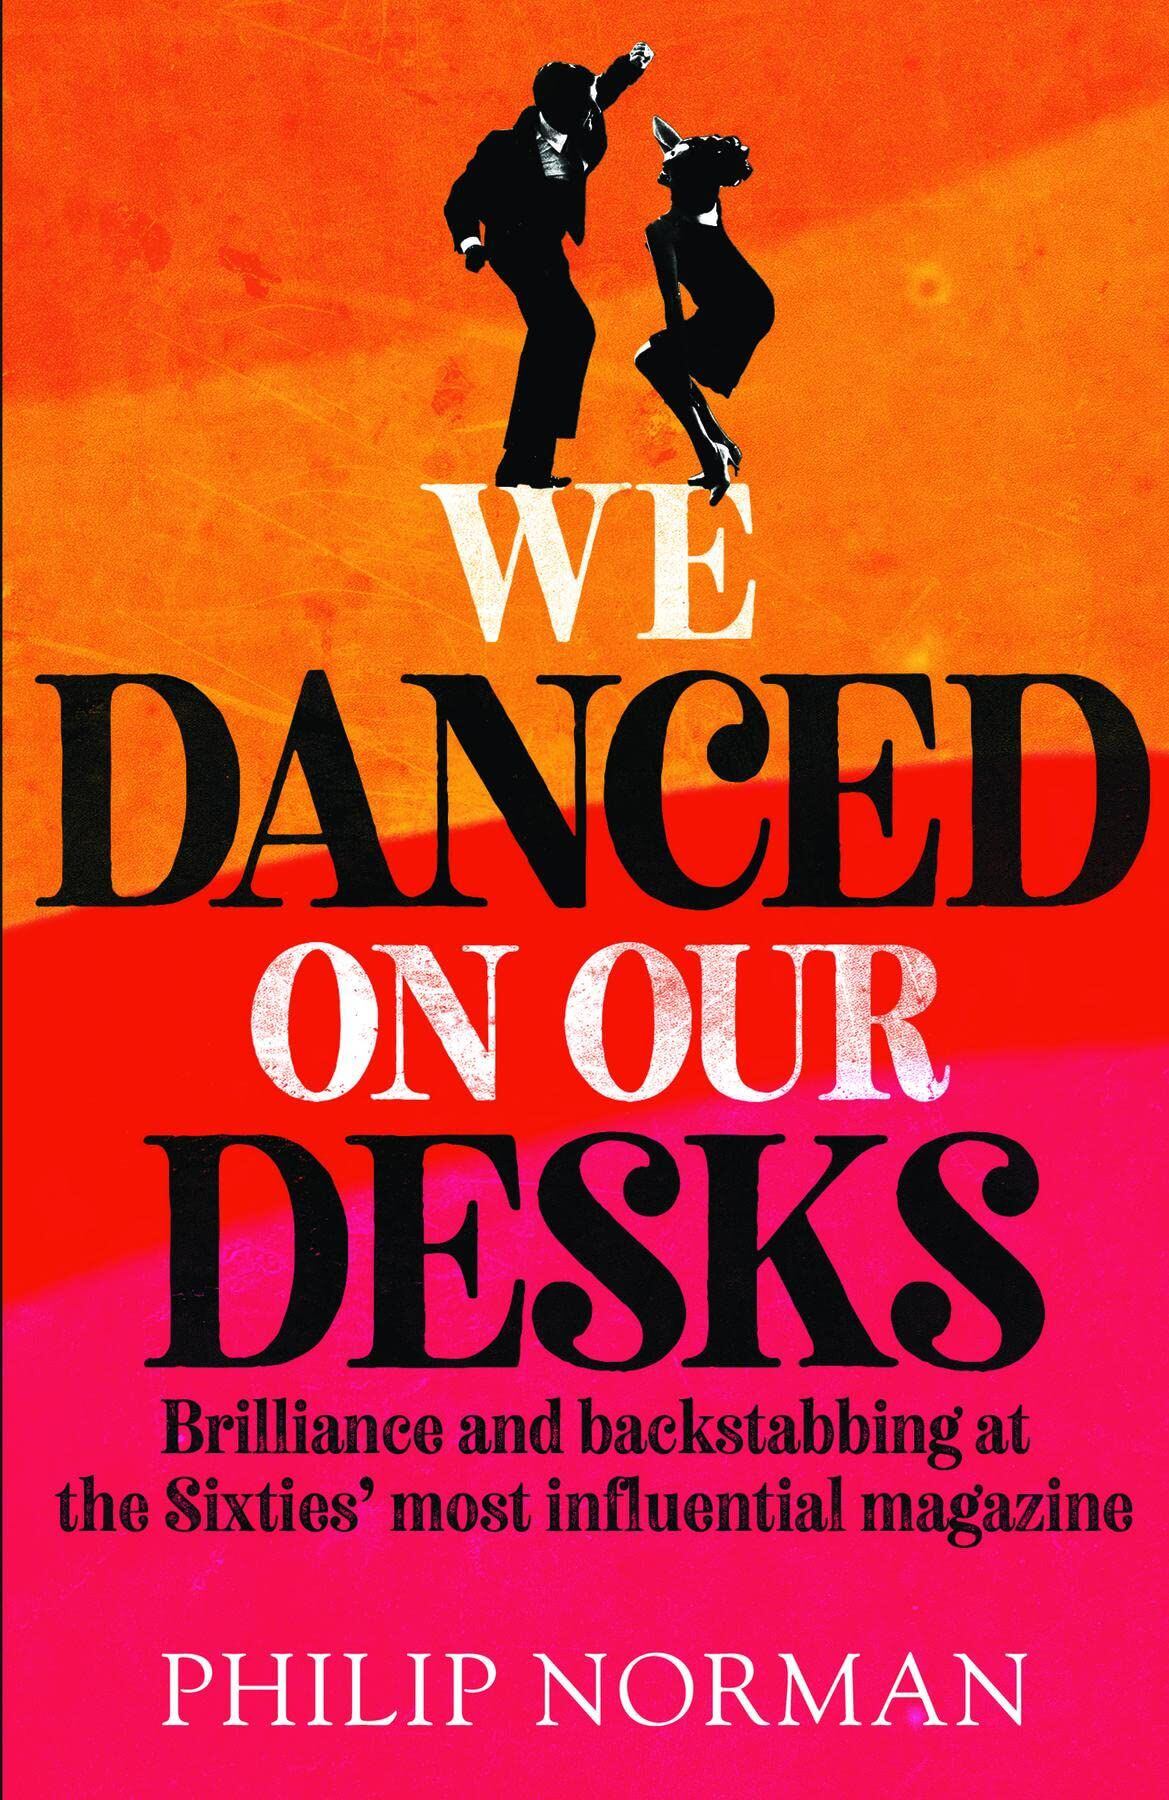 Portada del libro 'We danced on our desks', de Philip Norman.